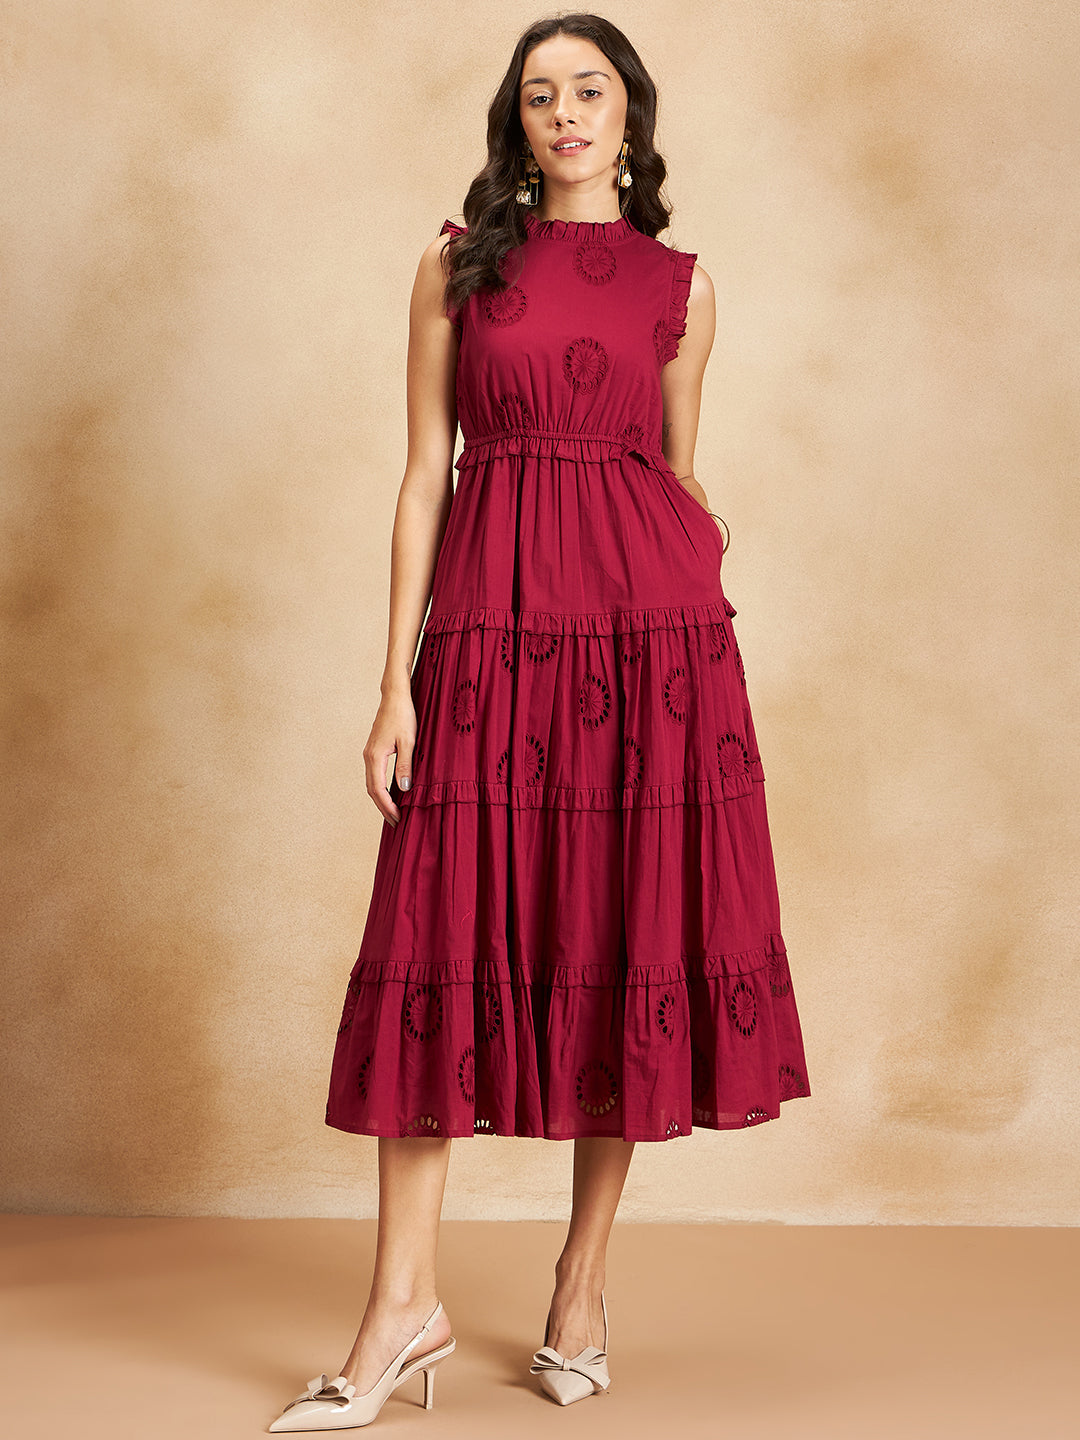 Red Cotton Schiffli Tier Maxi Dress